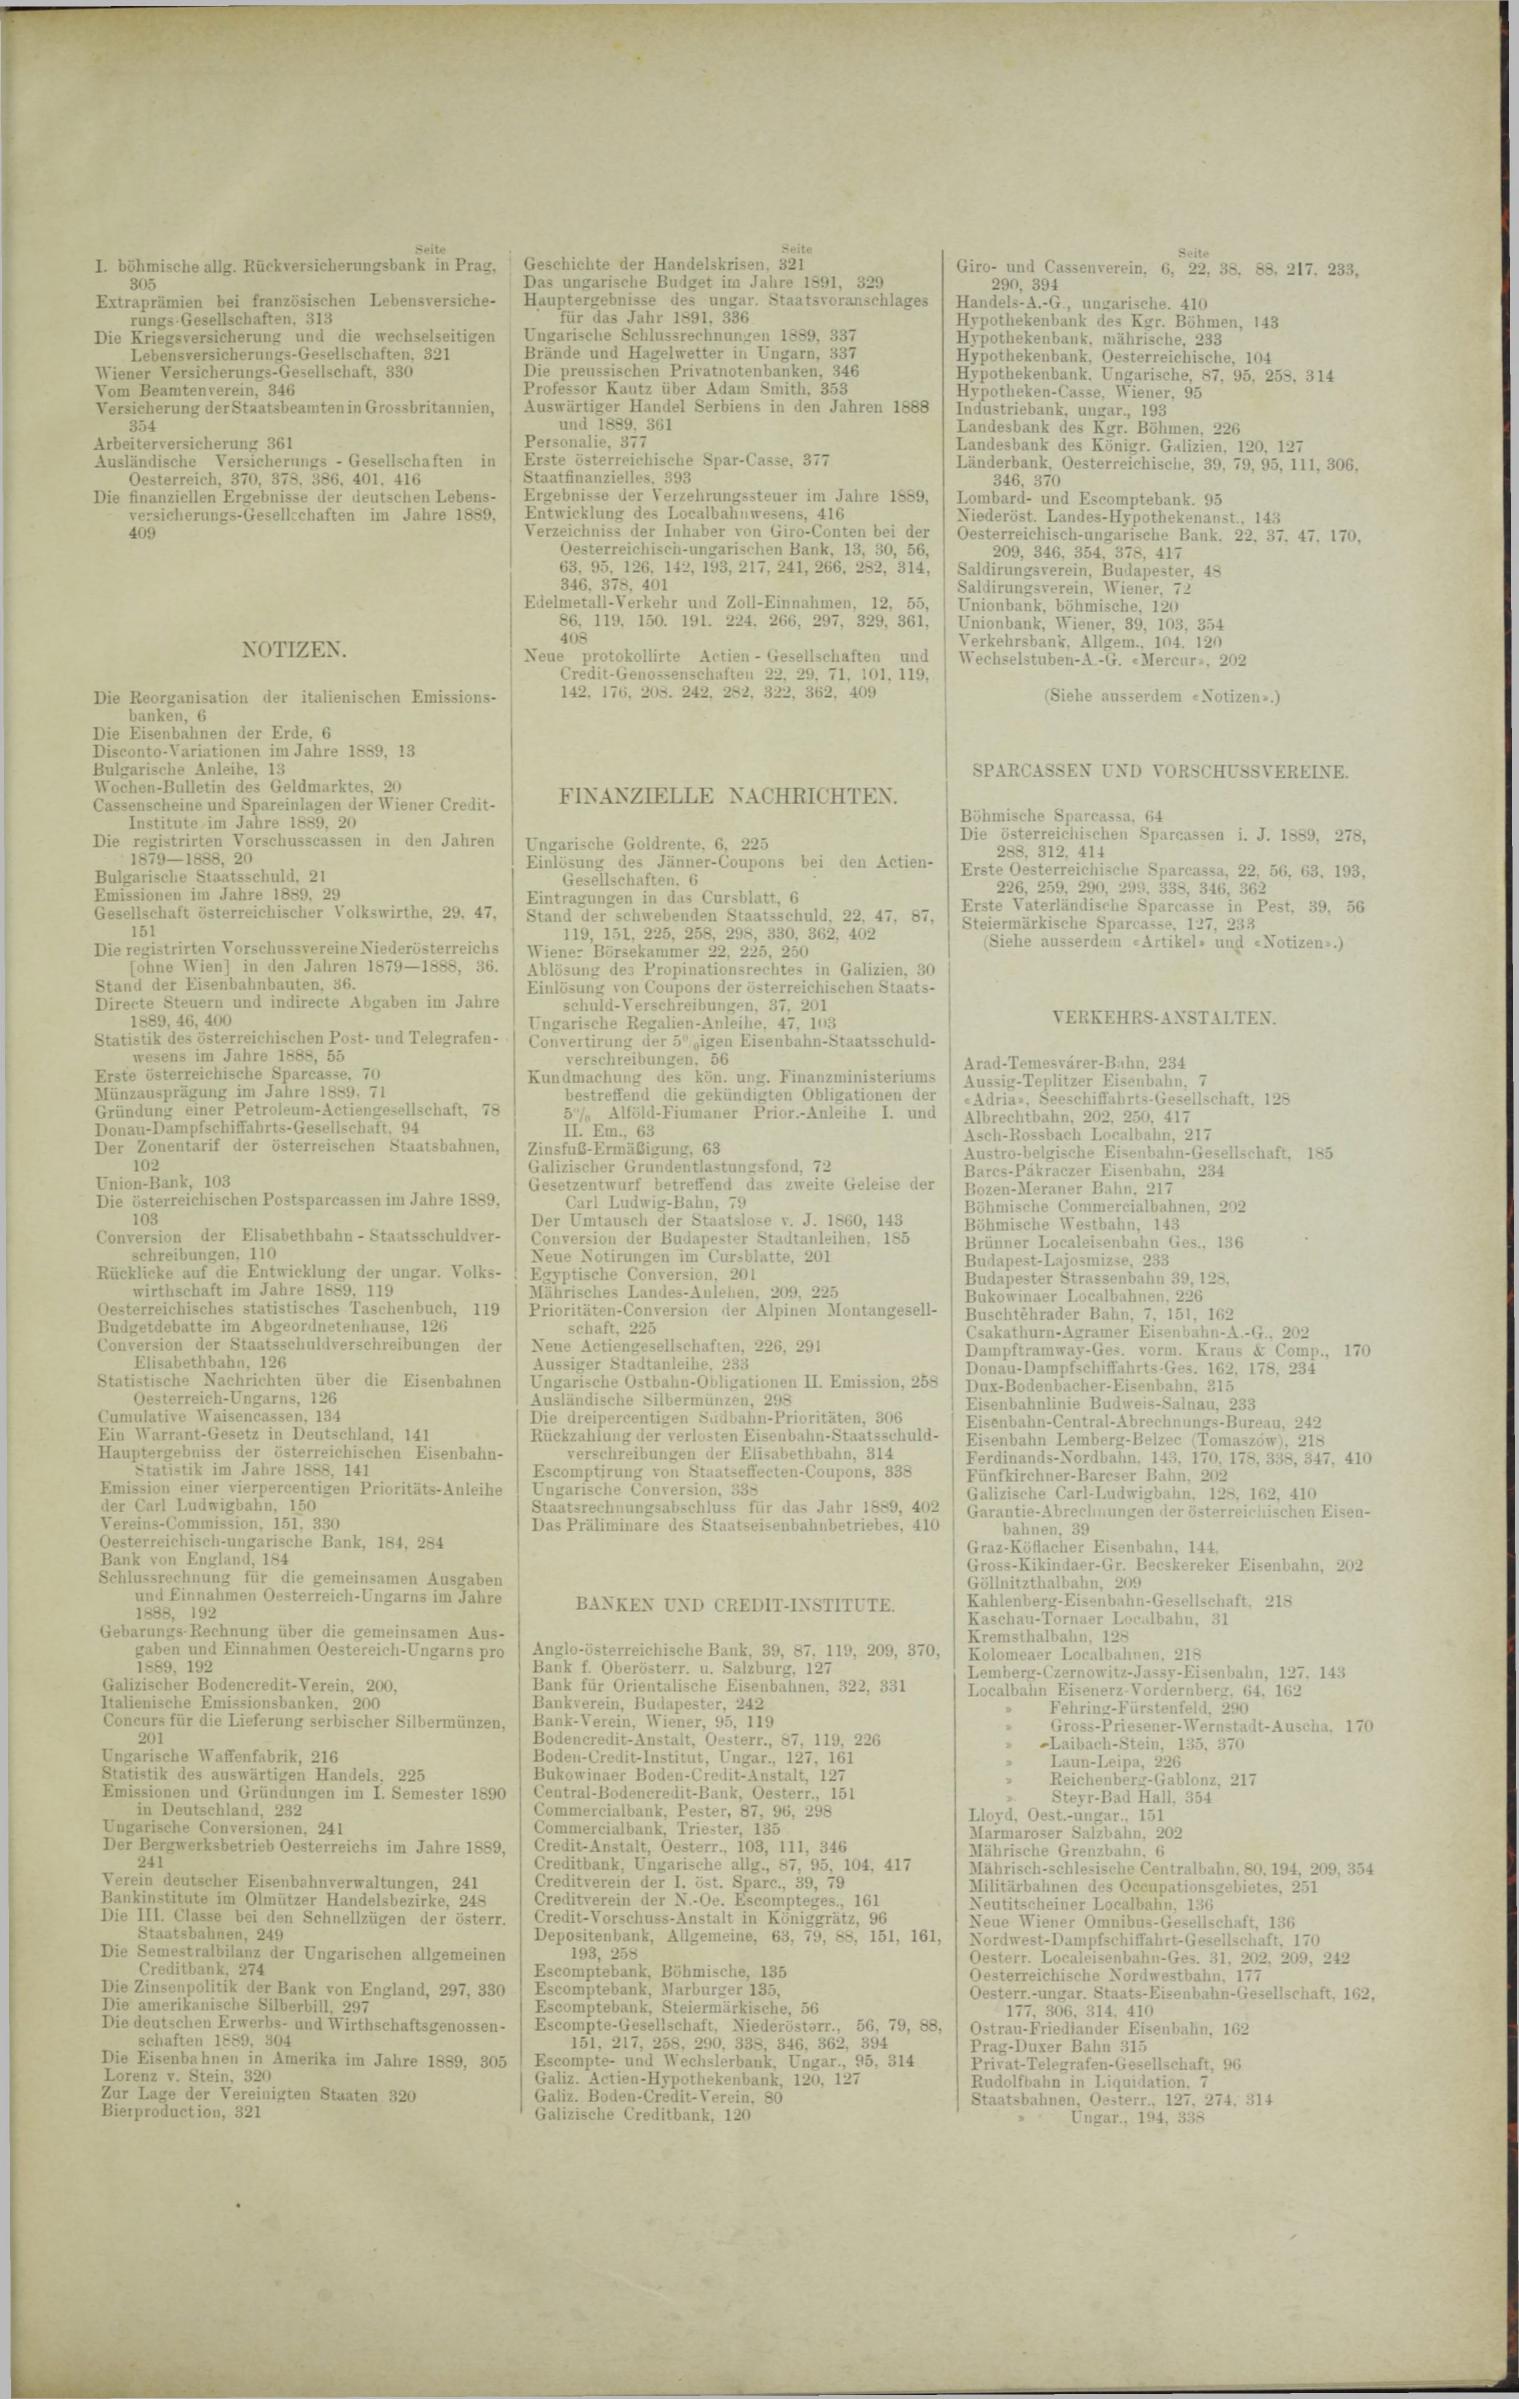 Der Tresor 13.11.1890 - Seite 13